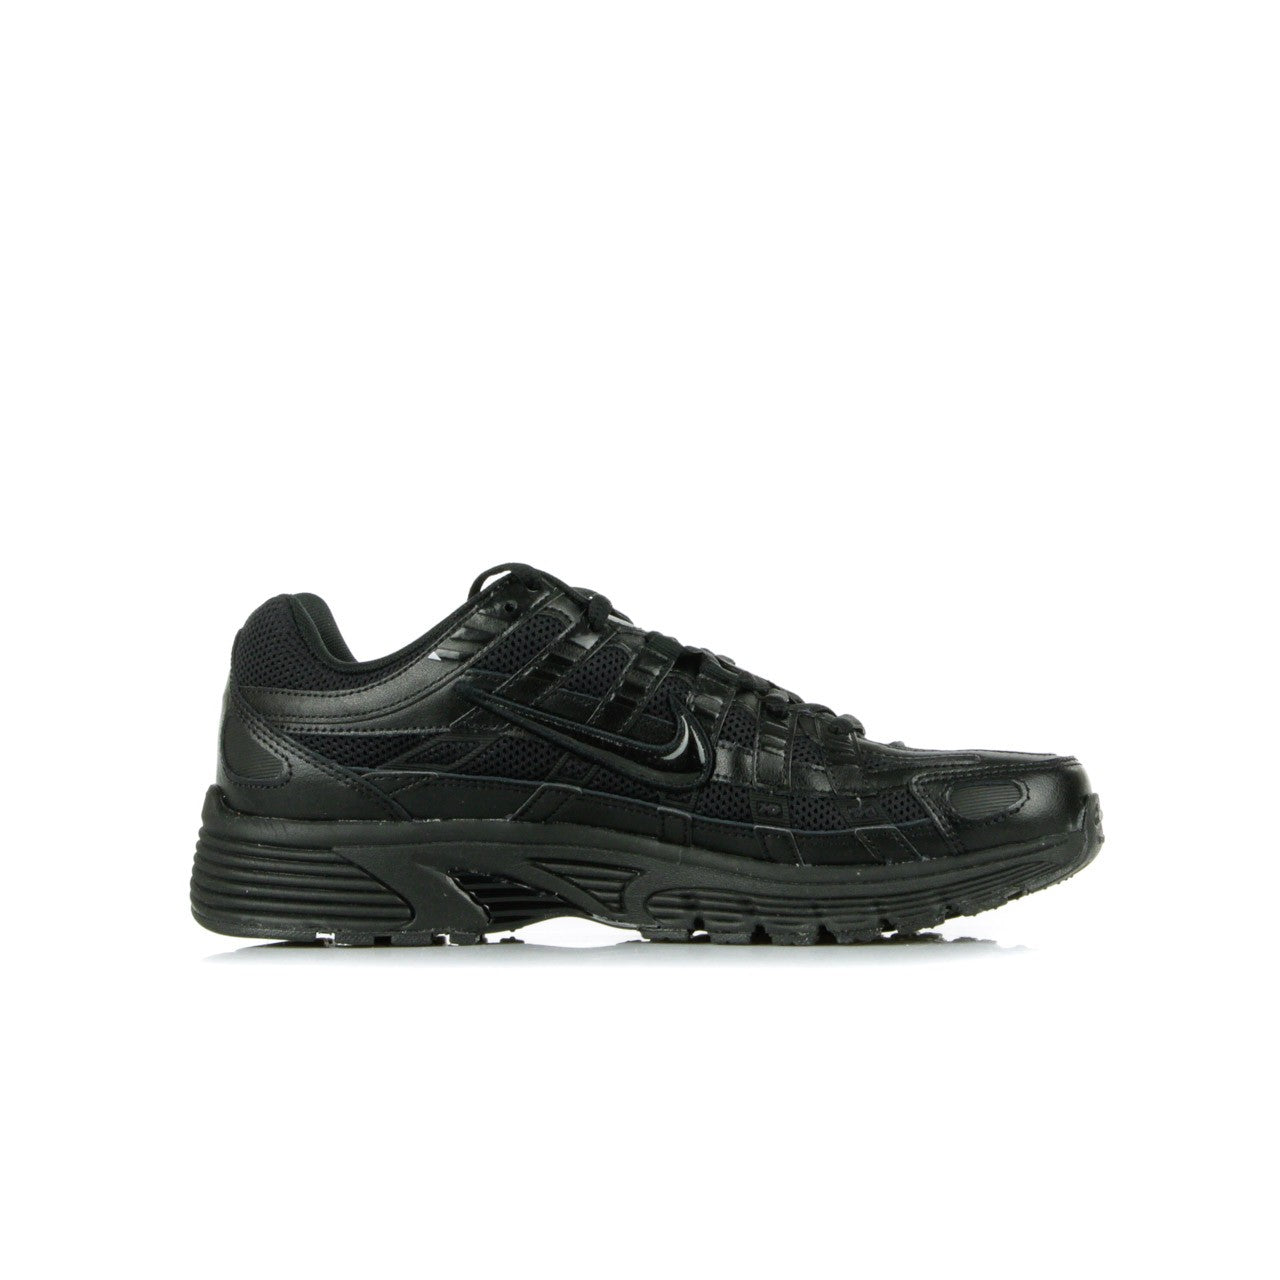 Low Men's Shoe P-6000 Black/black